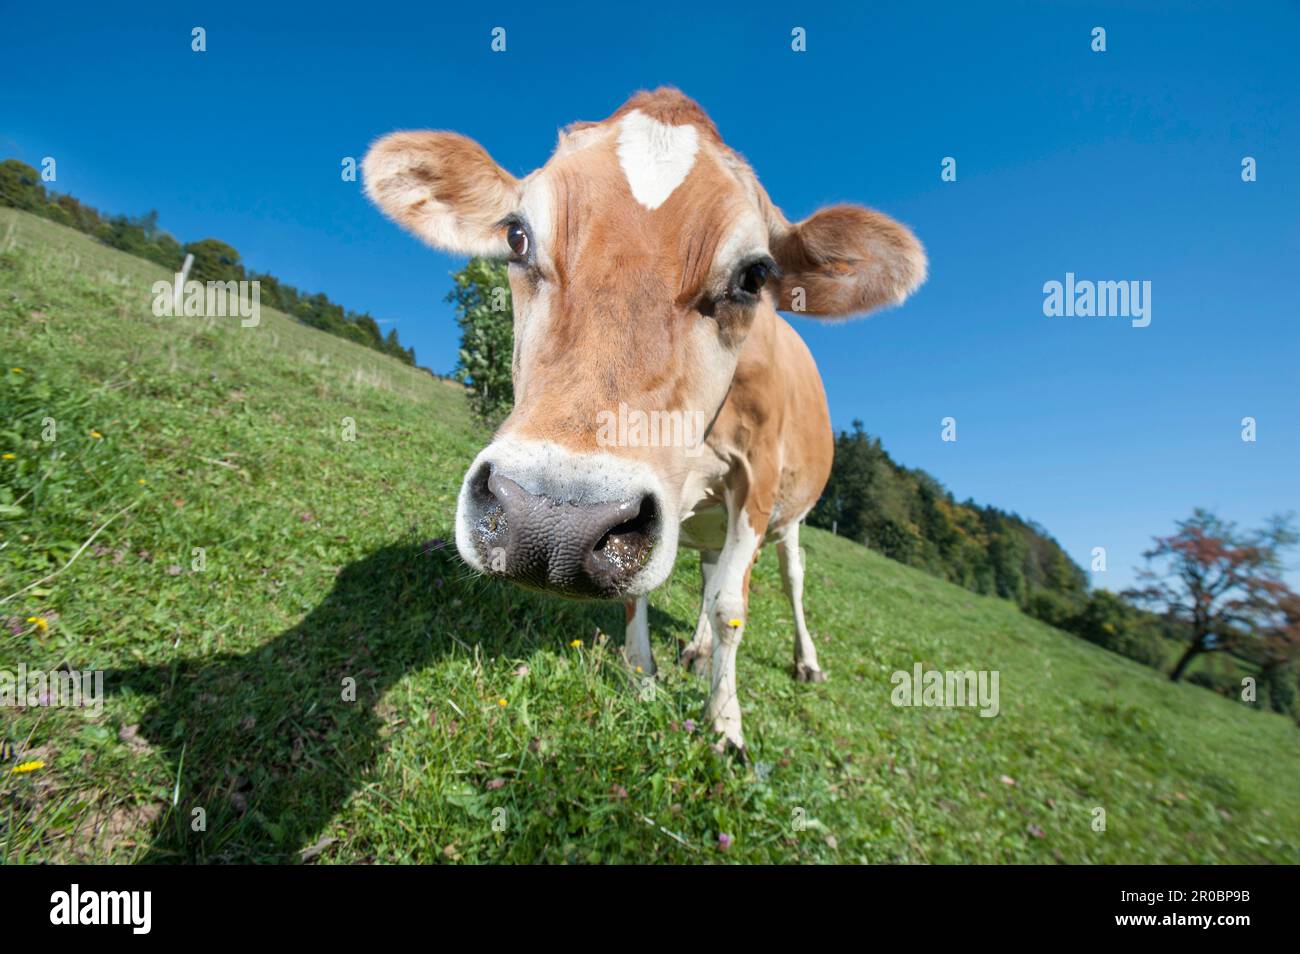 Bos primigenius taurus-Kuh auf Grasfeld, St. Gallen, Schweiz Stockfoto